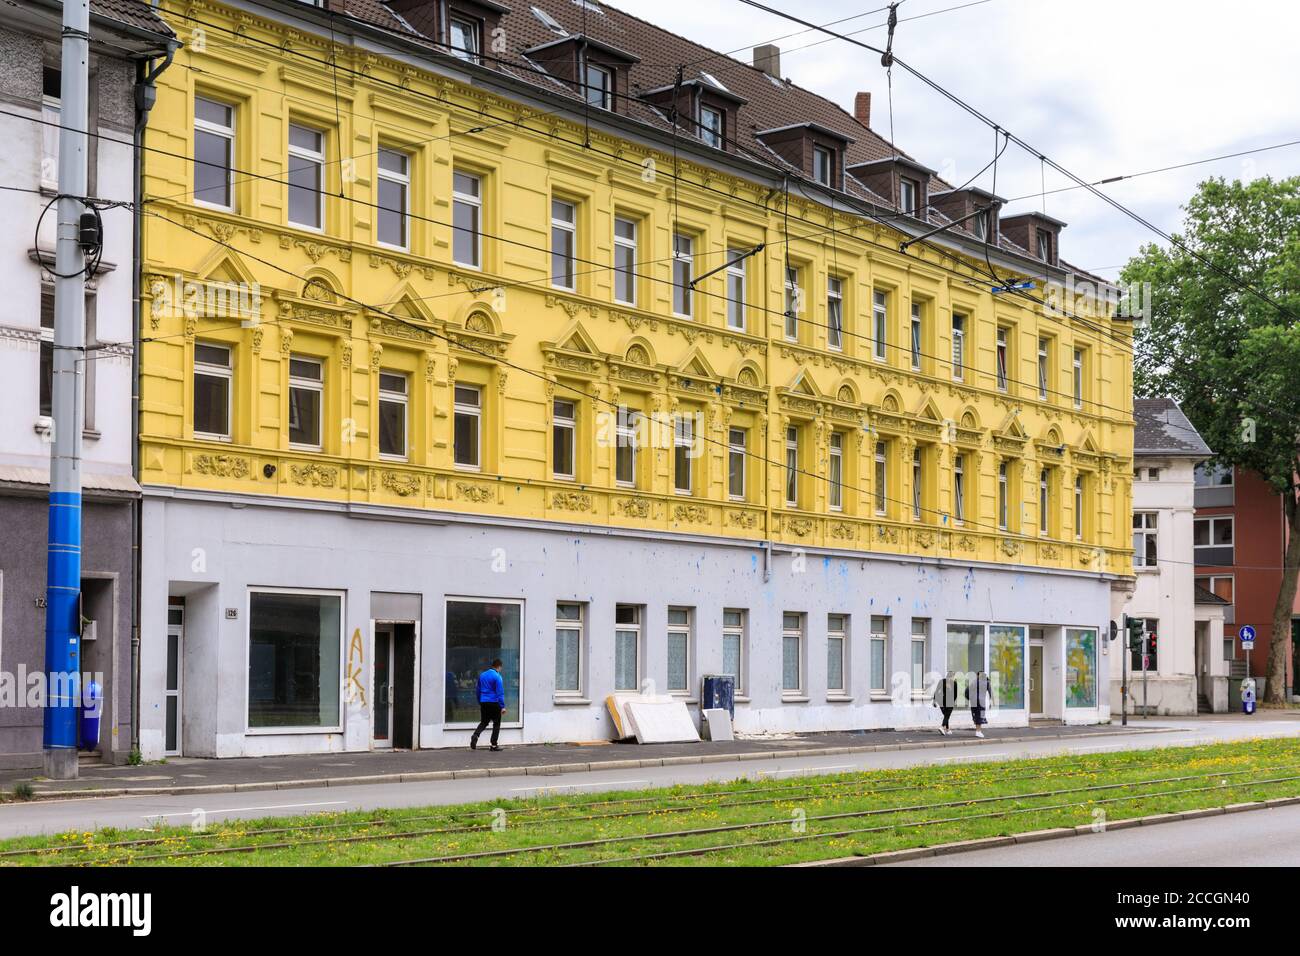 Maison jaune vandalisée avec la peinture bleue de Schalke en protestation, zone de fans de Schalker Meile du club de football FC Schalke 04, à Gelsenkirchen, Rhénanie-du-Nord-nous Banque D'Images